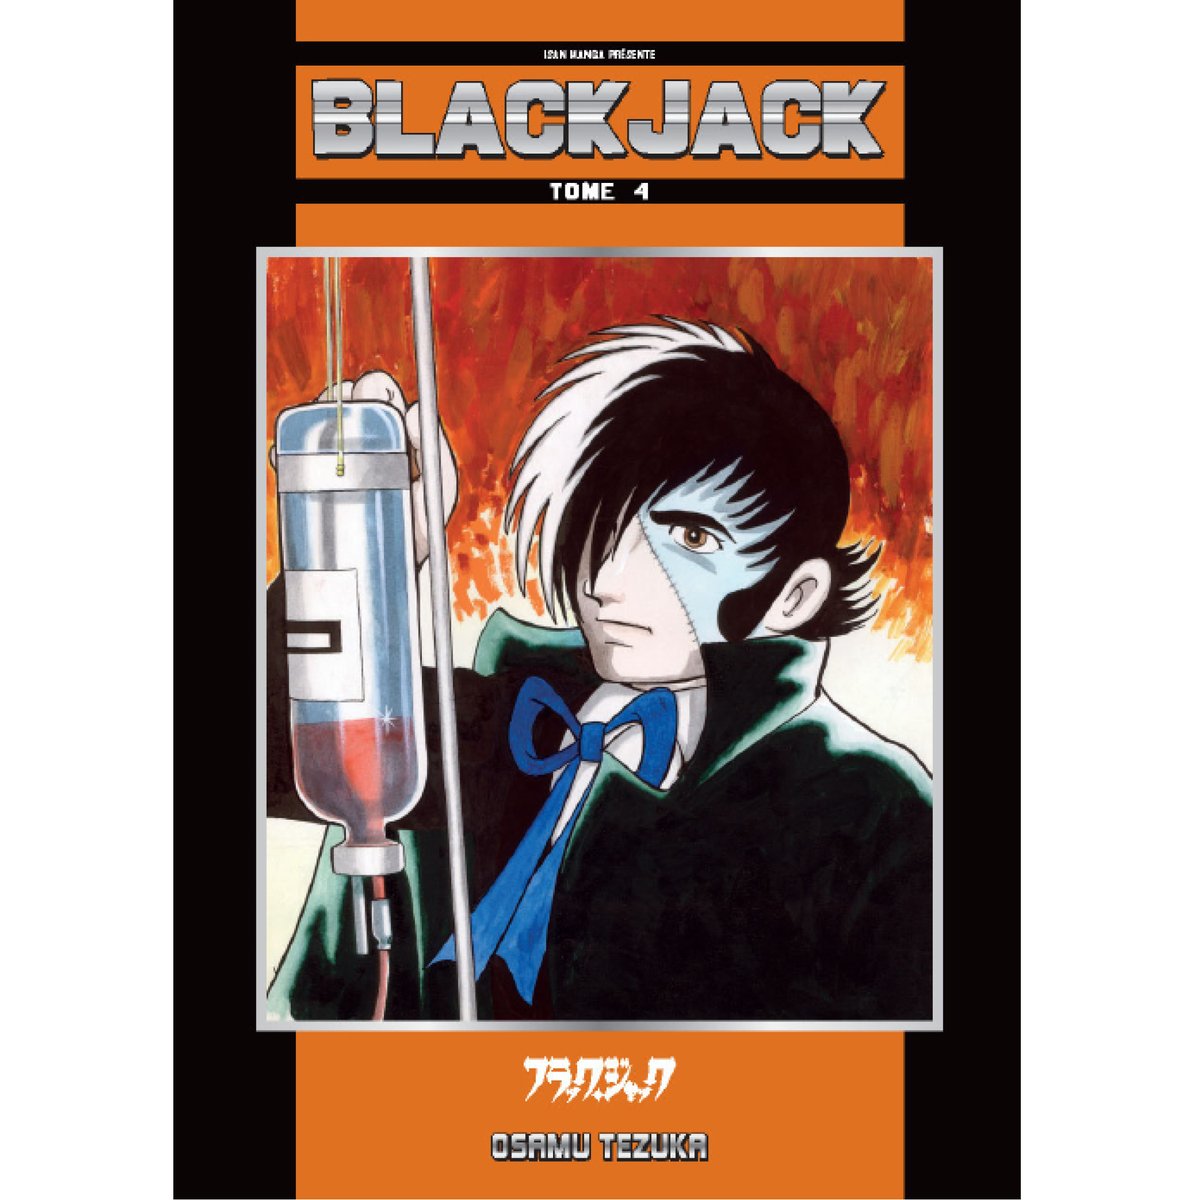 Mina-san konbanwa ! Le 7 juin, retrouvez en librairie la suite des aventures de Black Jack, avec le tome 4 ! Comme d'habitude, on vous dévoilera le détail des chapitres bientôt ! 😊